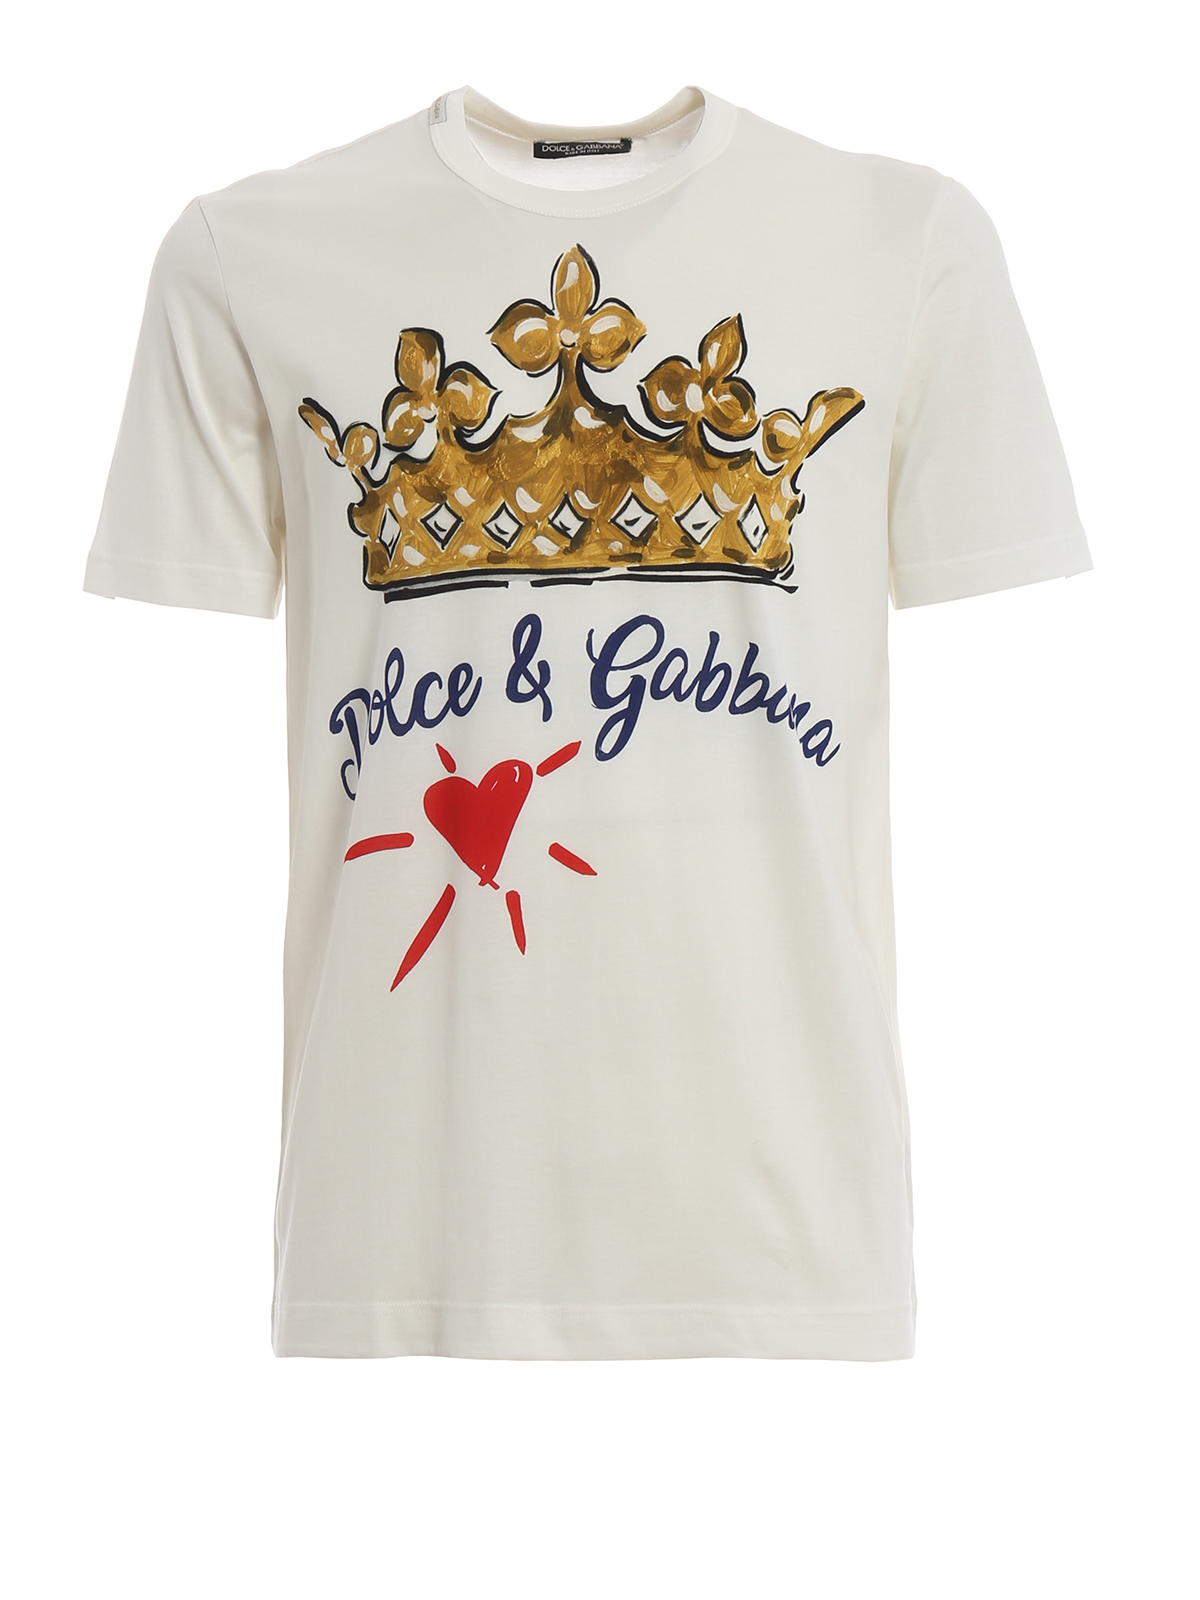 dolce gabbana t shirt crown